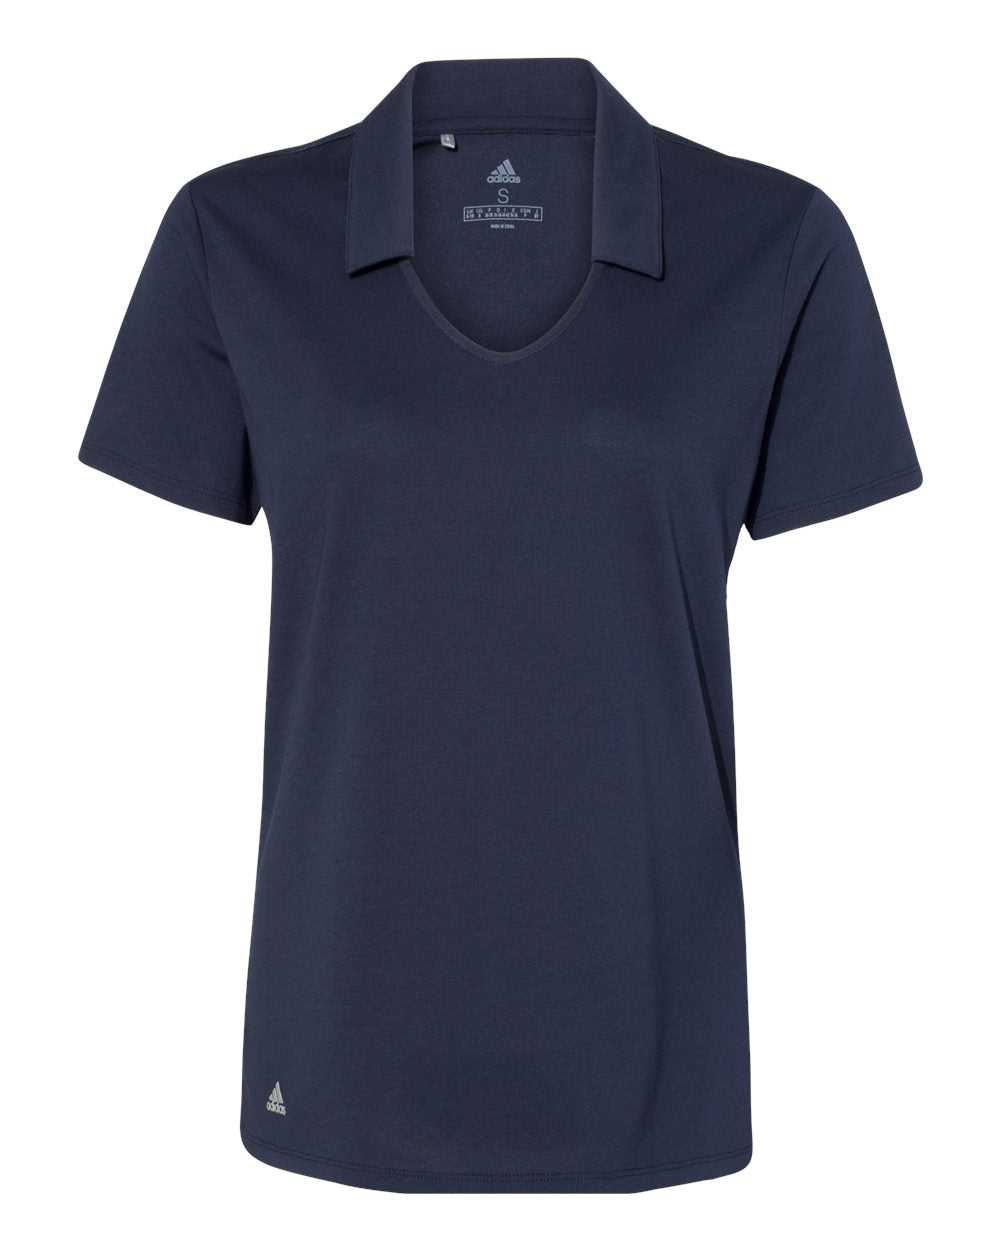 Adidas A323 Women&#39;s Cotton Blend Sport Shirt - Navy - HIT a Double